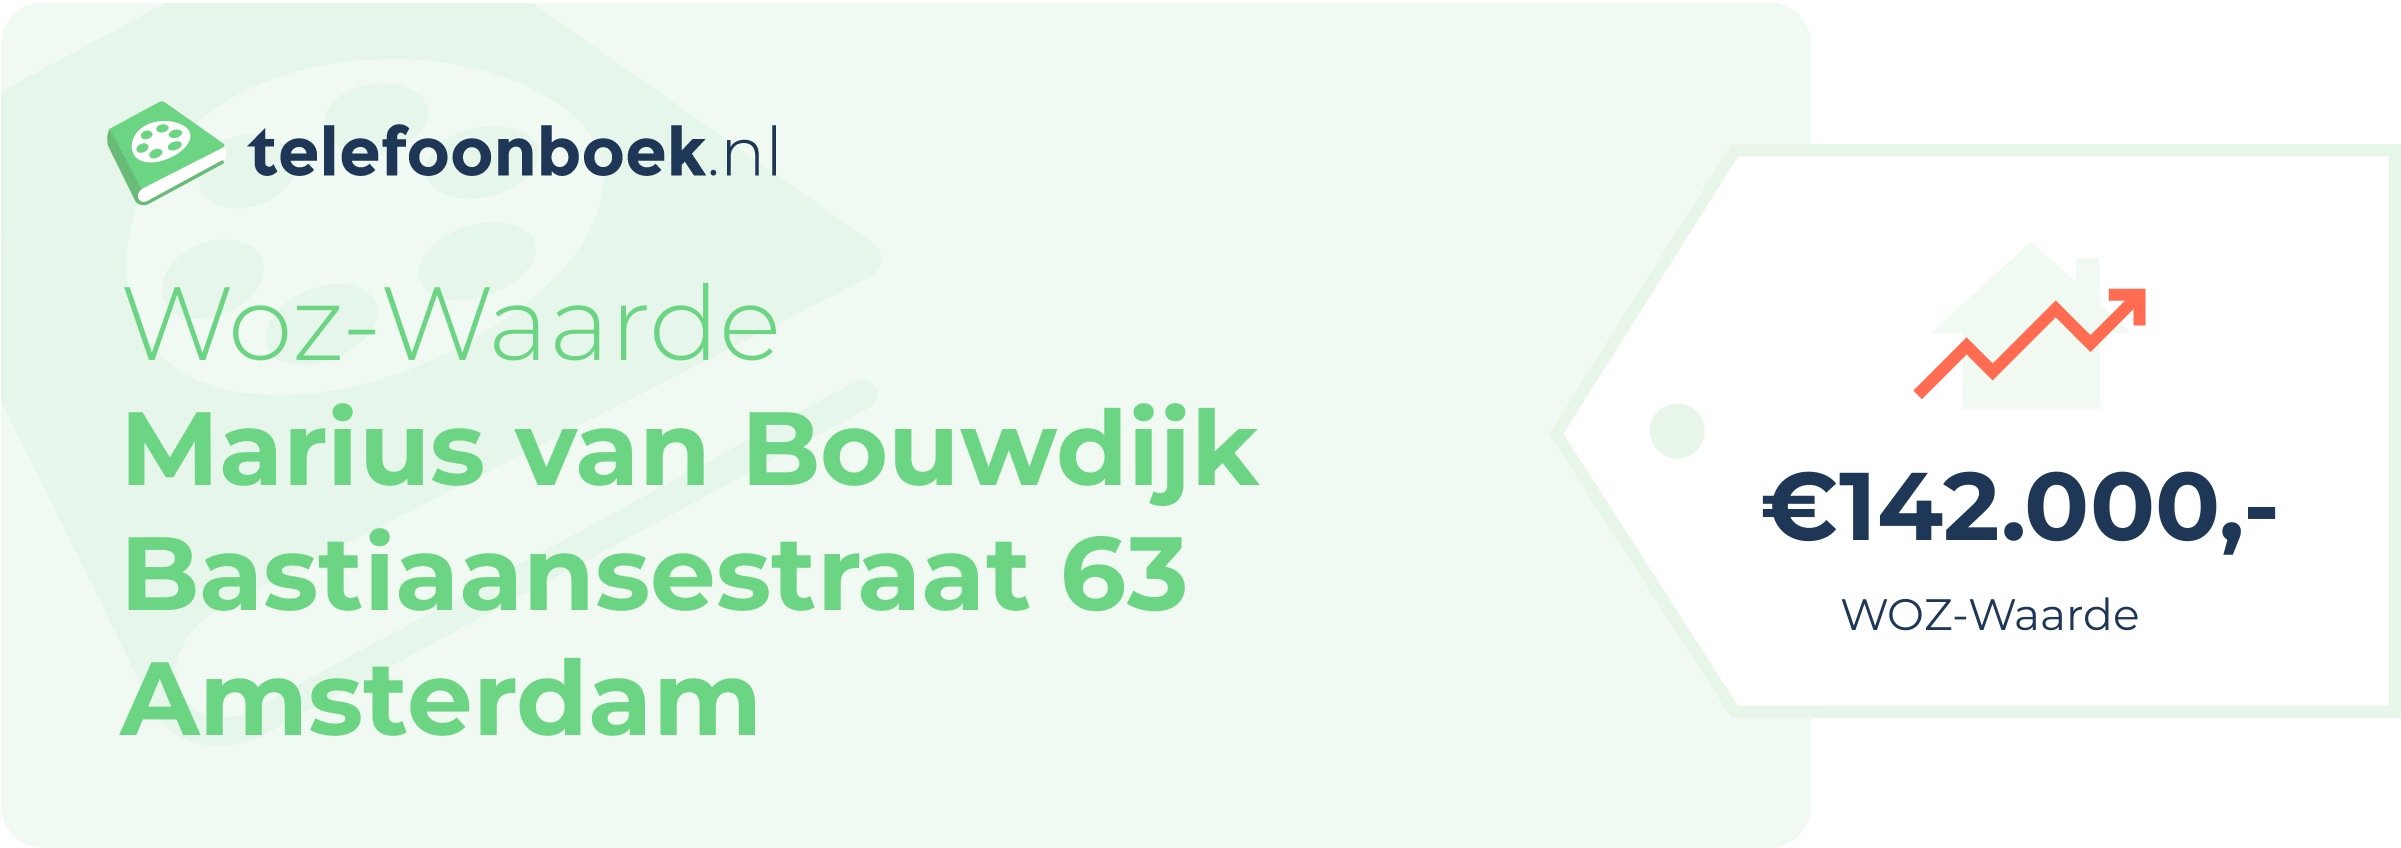 WOZ-waarde Marius Van Bouwdijk Bastiaansestraat 63 Amsterdam